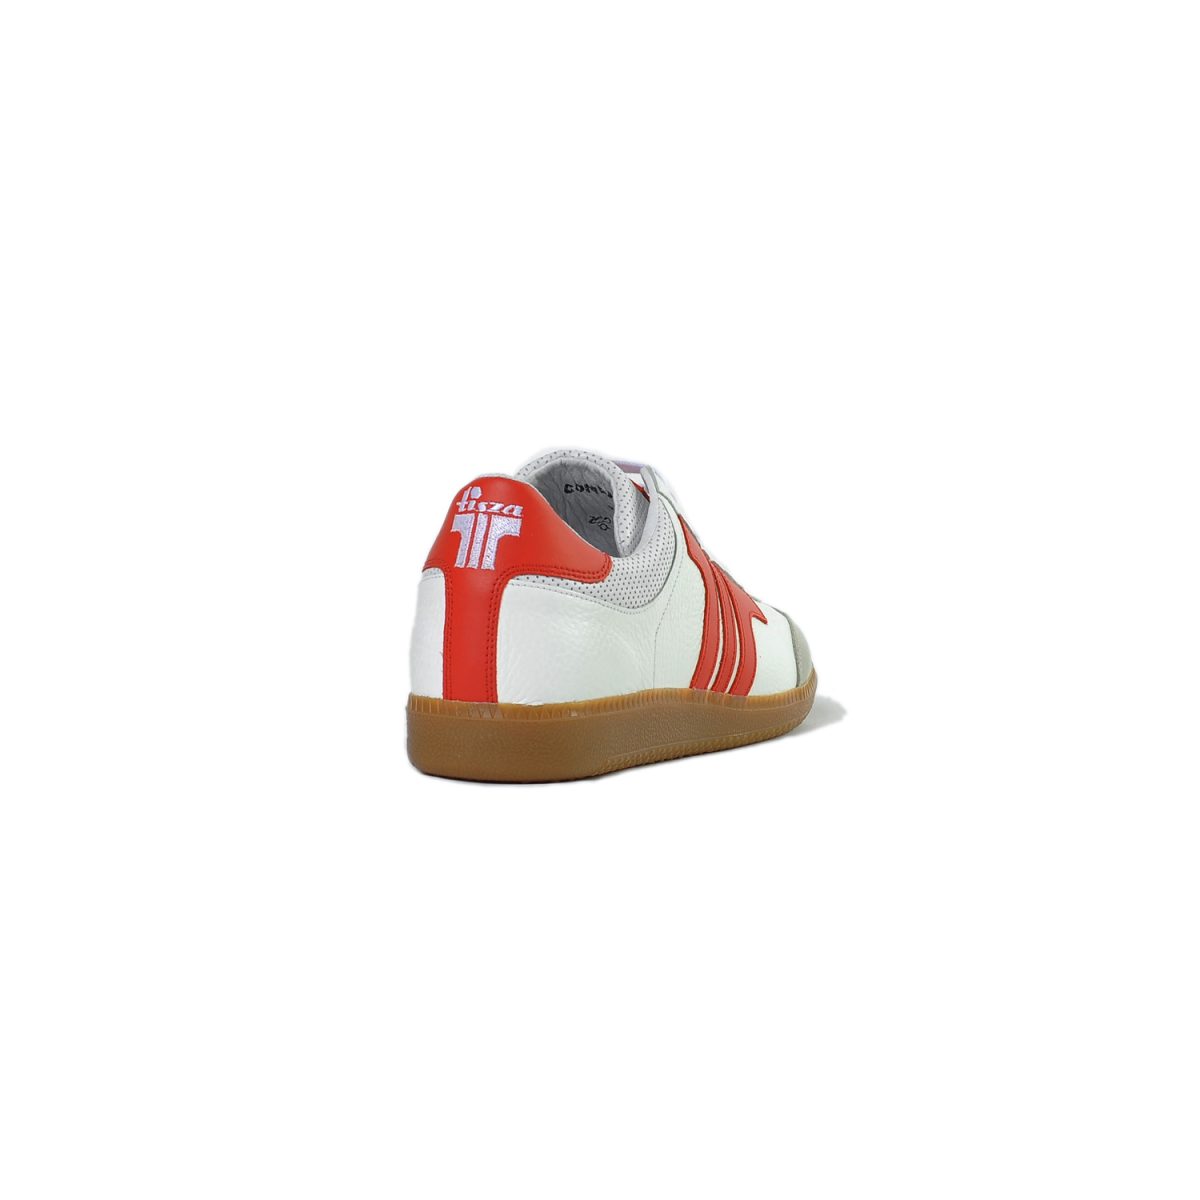 Tisza cipő - Compakt - Fehér-piros